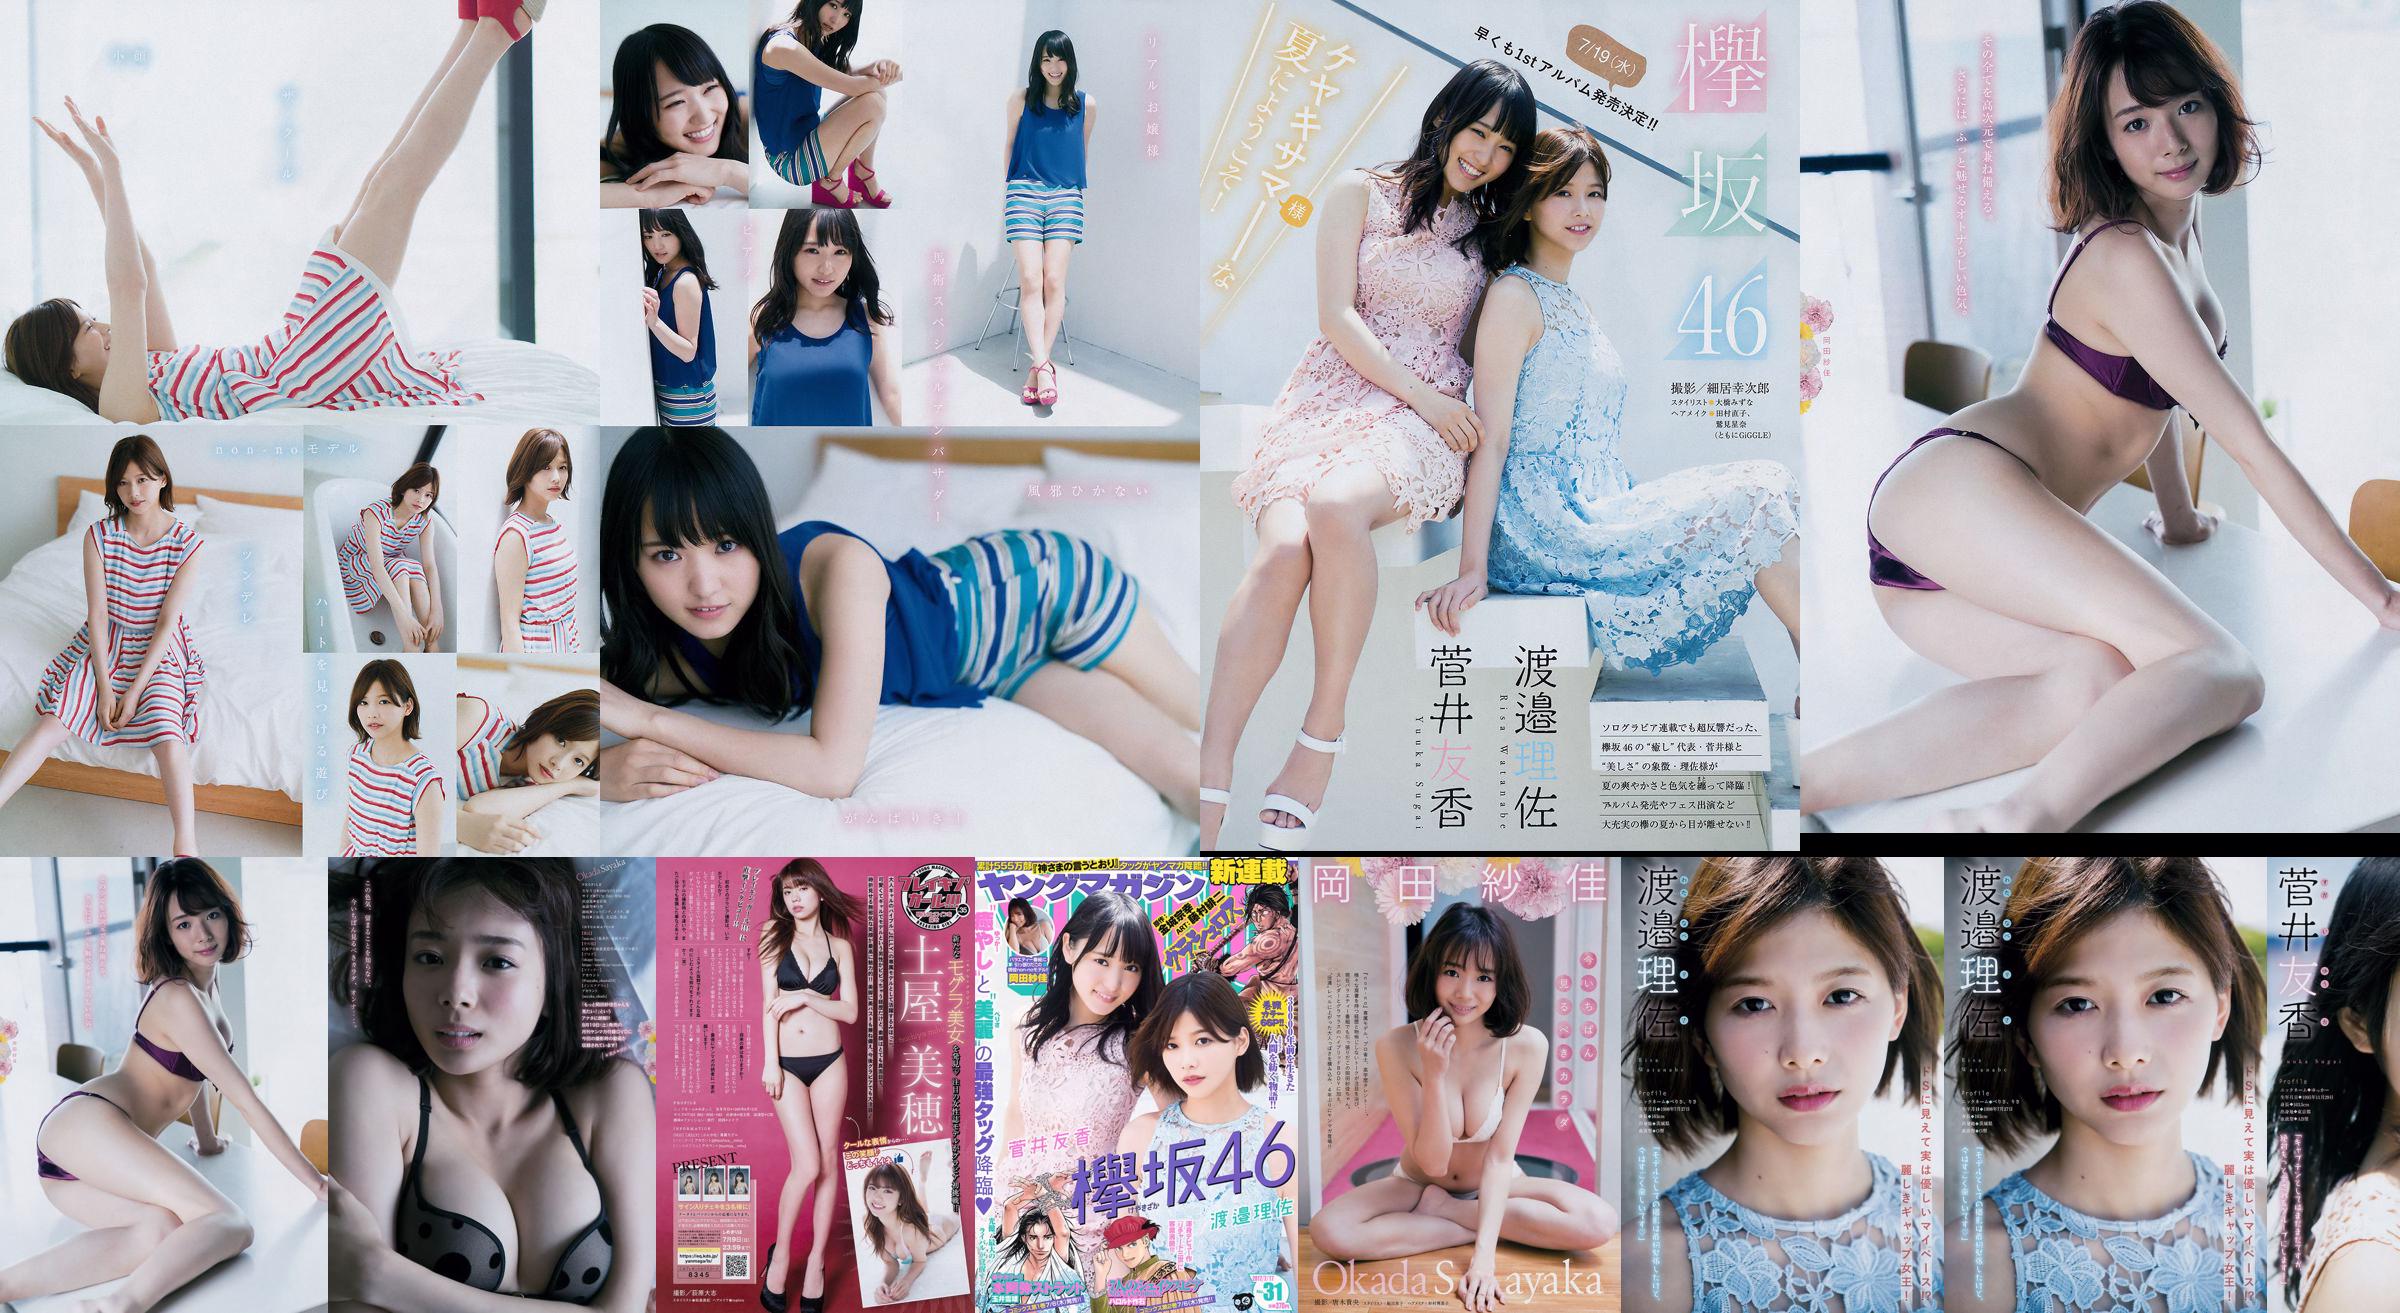 [Young Magazine] Watanabe Risa, Sugai Yuka, Okada Saika 2017 No.31 Photo Magazine No.e2de1d Página 1